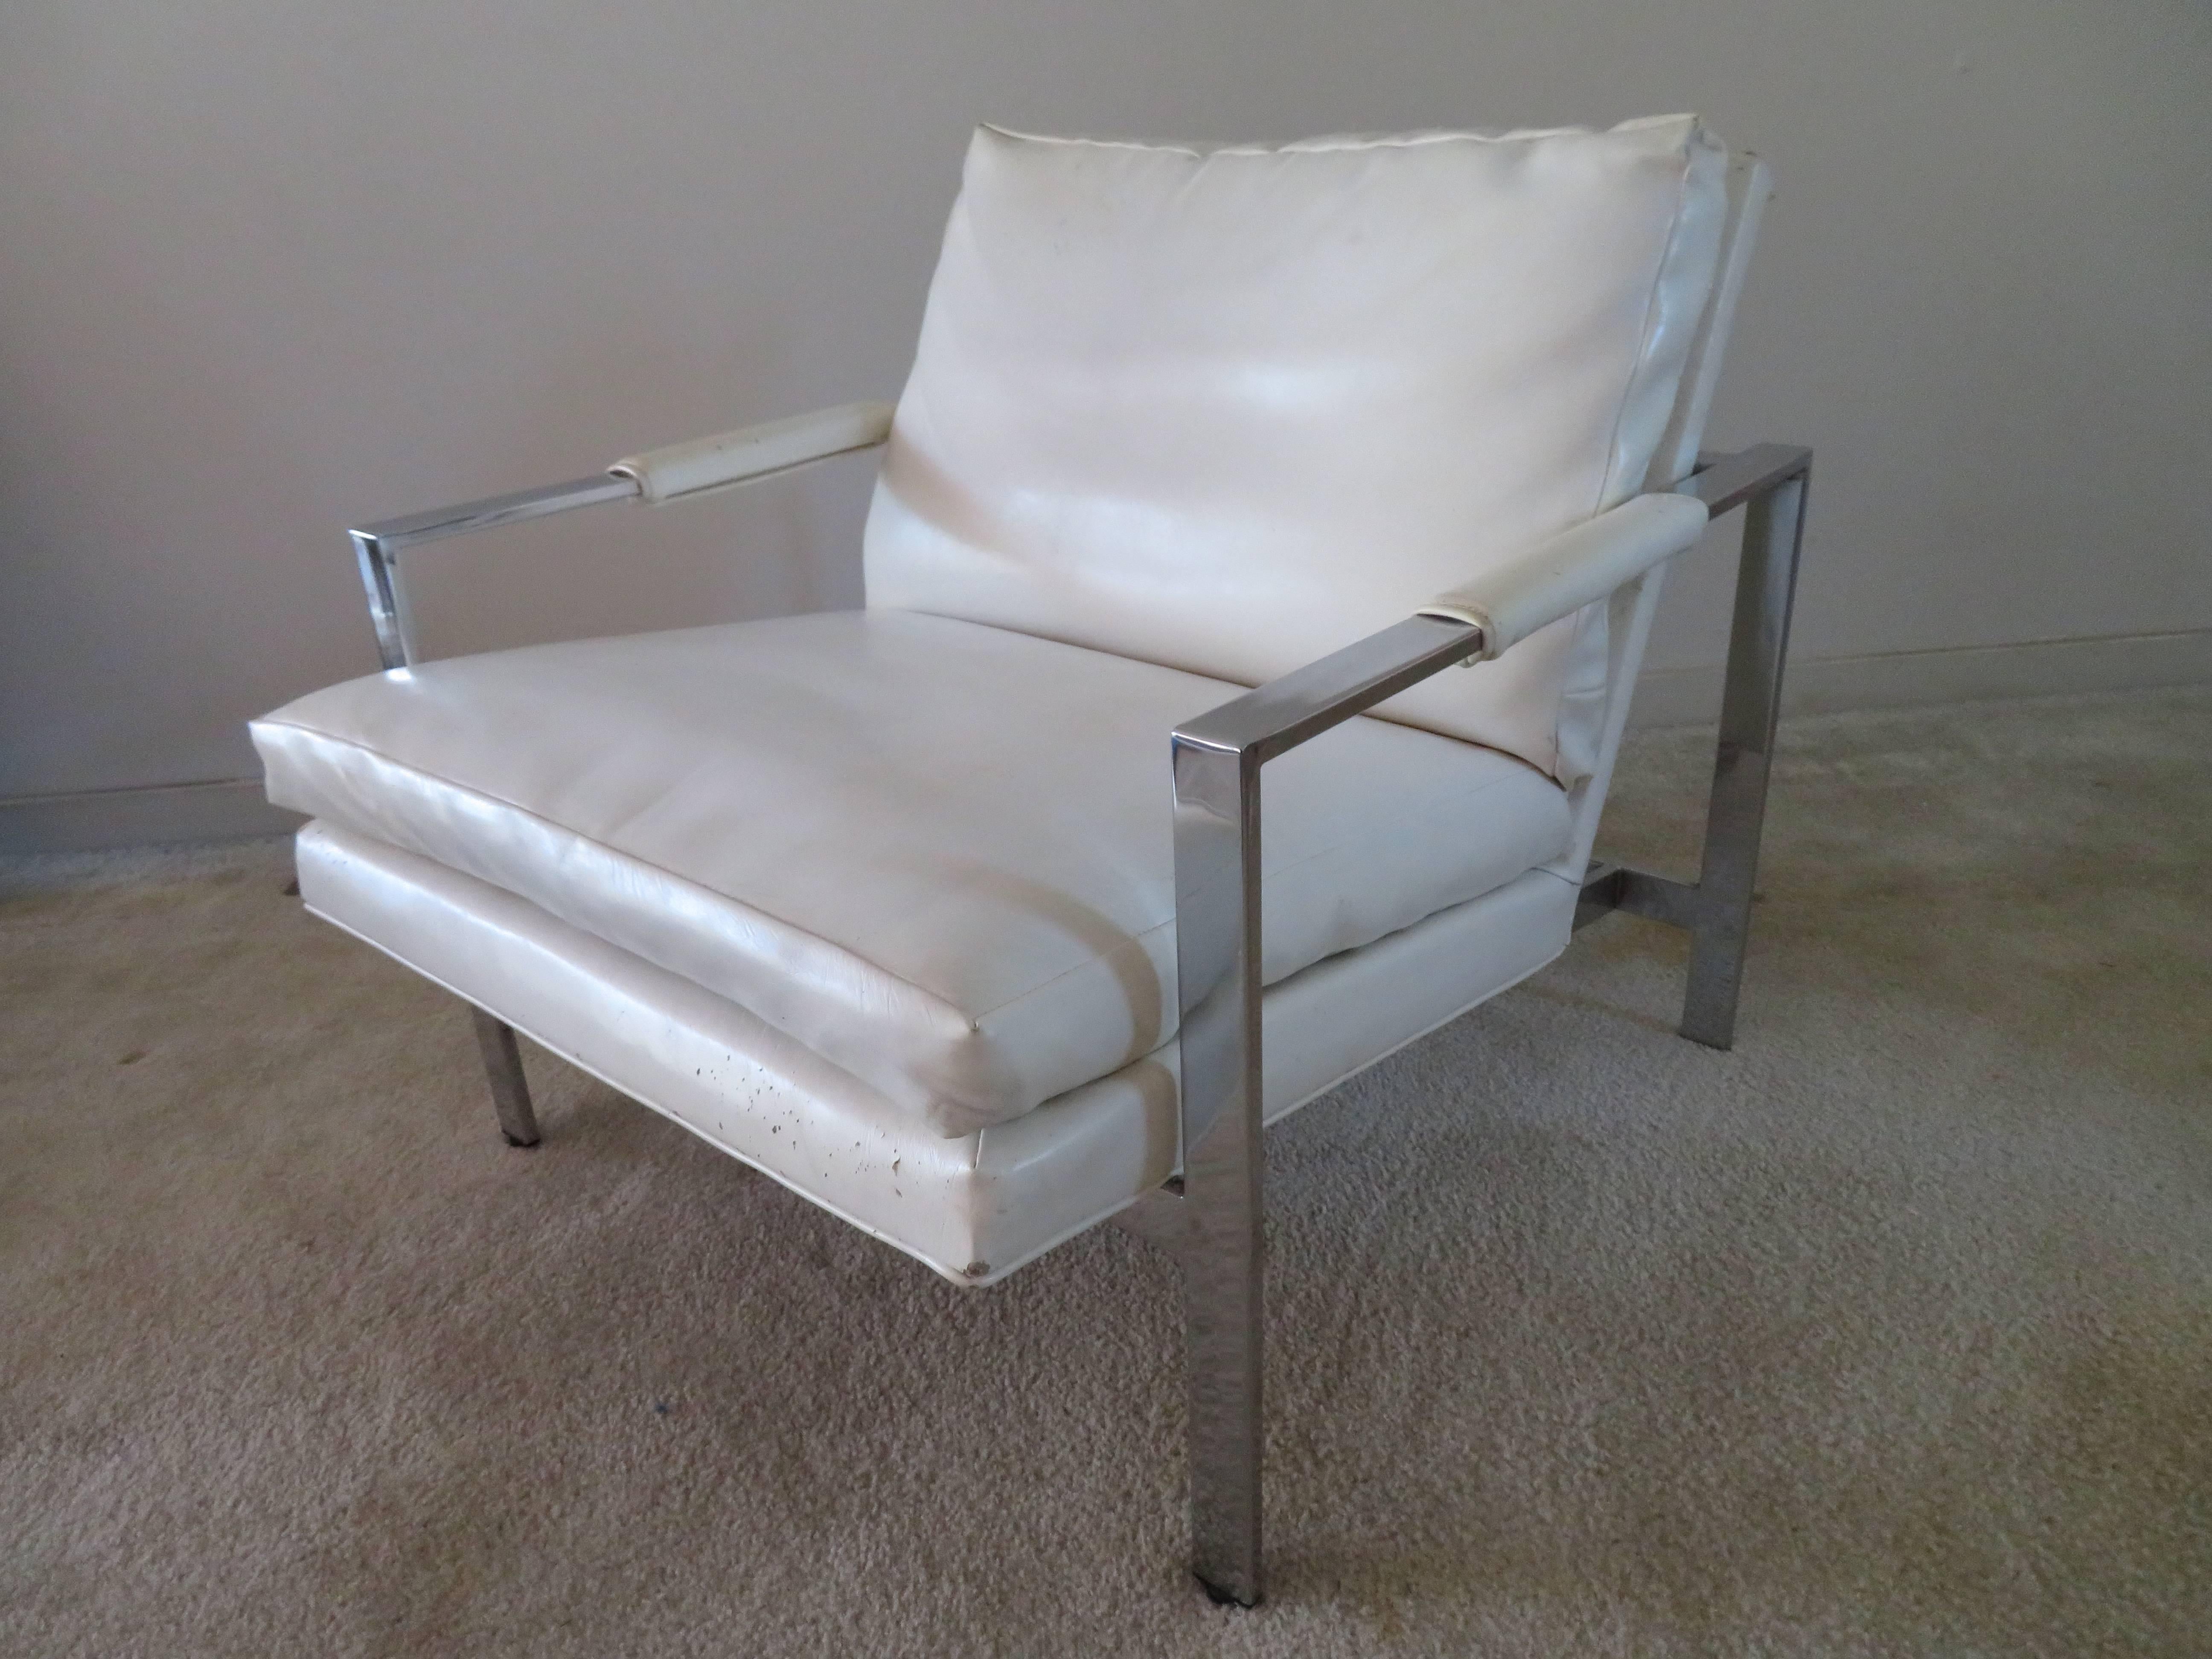 Magnifique chaise de salon Flatbar en chrome de Milo Baughman. Cette chaise aura besoin d'un nouveau revêtement, mais le chrome est en bon état - prêt à recevoir le revêtement préféré de votre client.